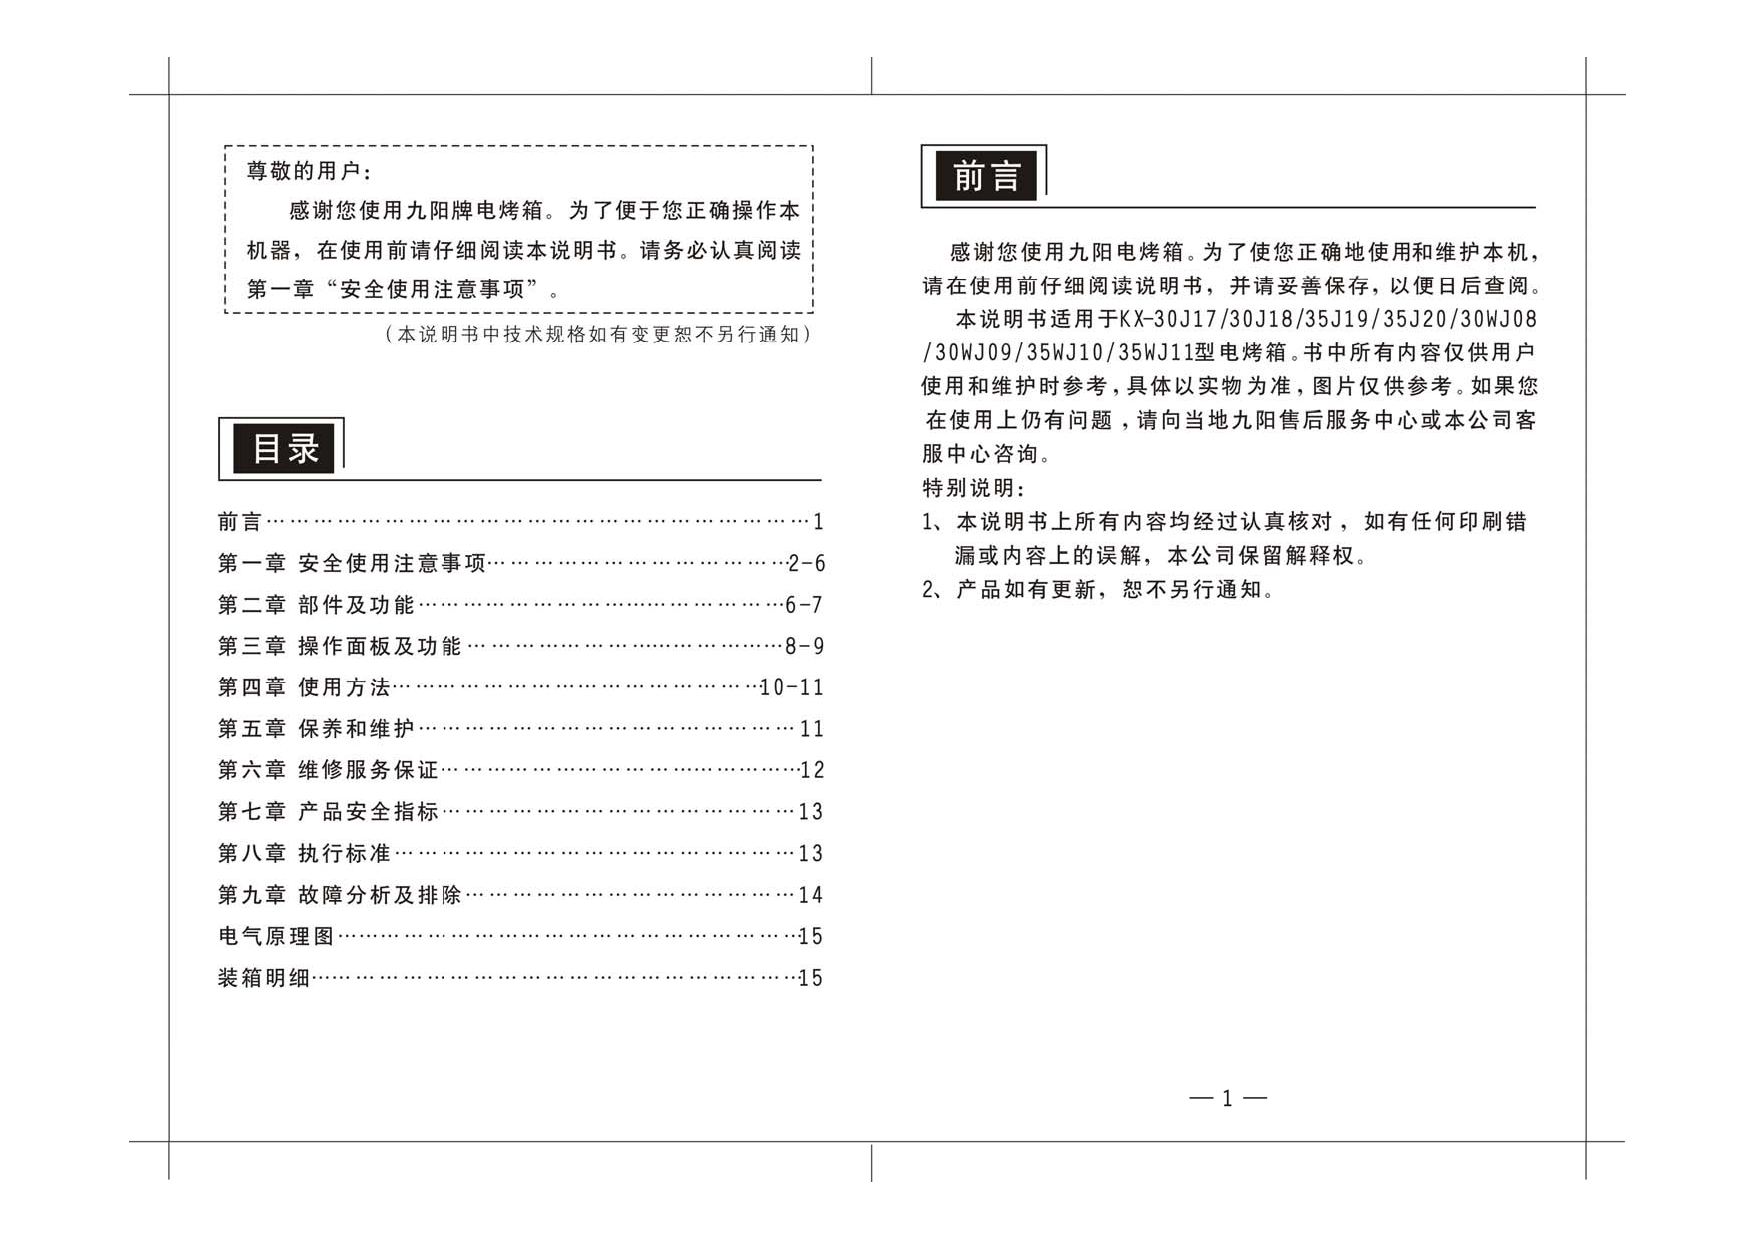 九阳 Joyyoung KX-30J17, KX-35J20 使用说明书 第1页